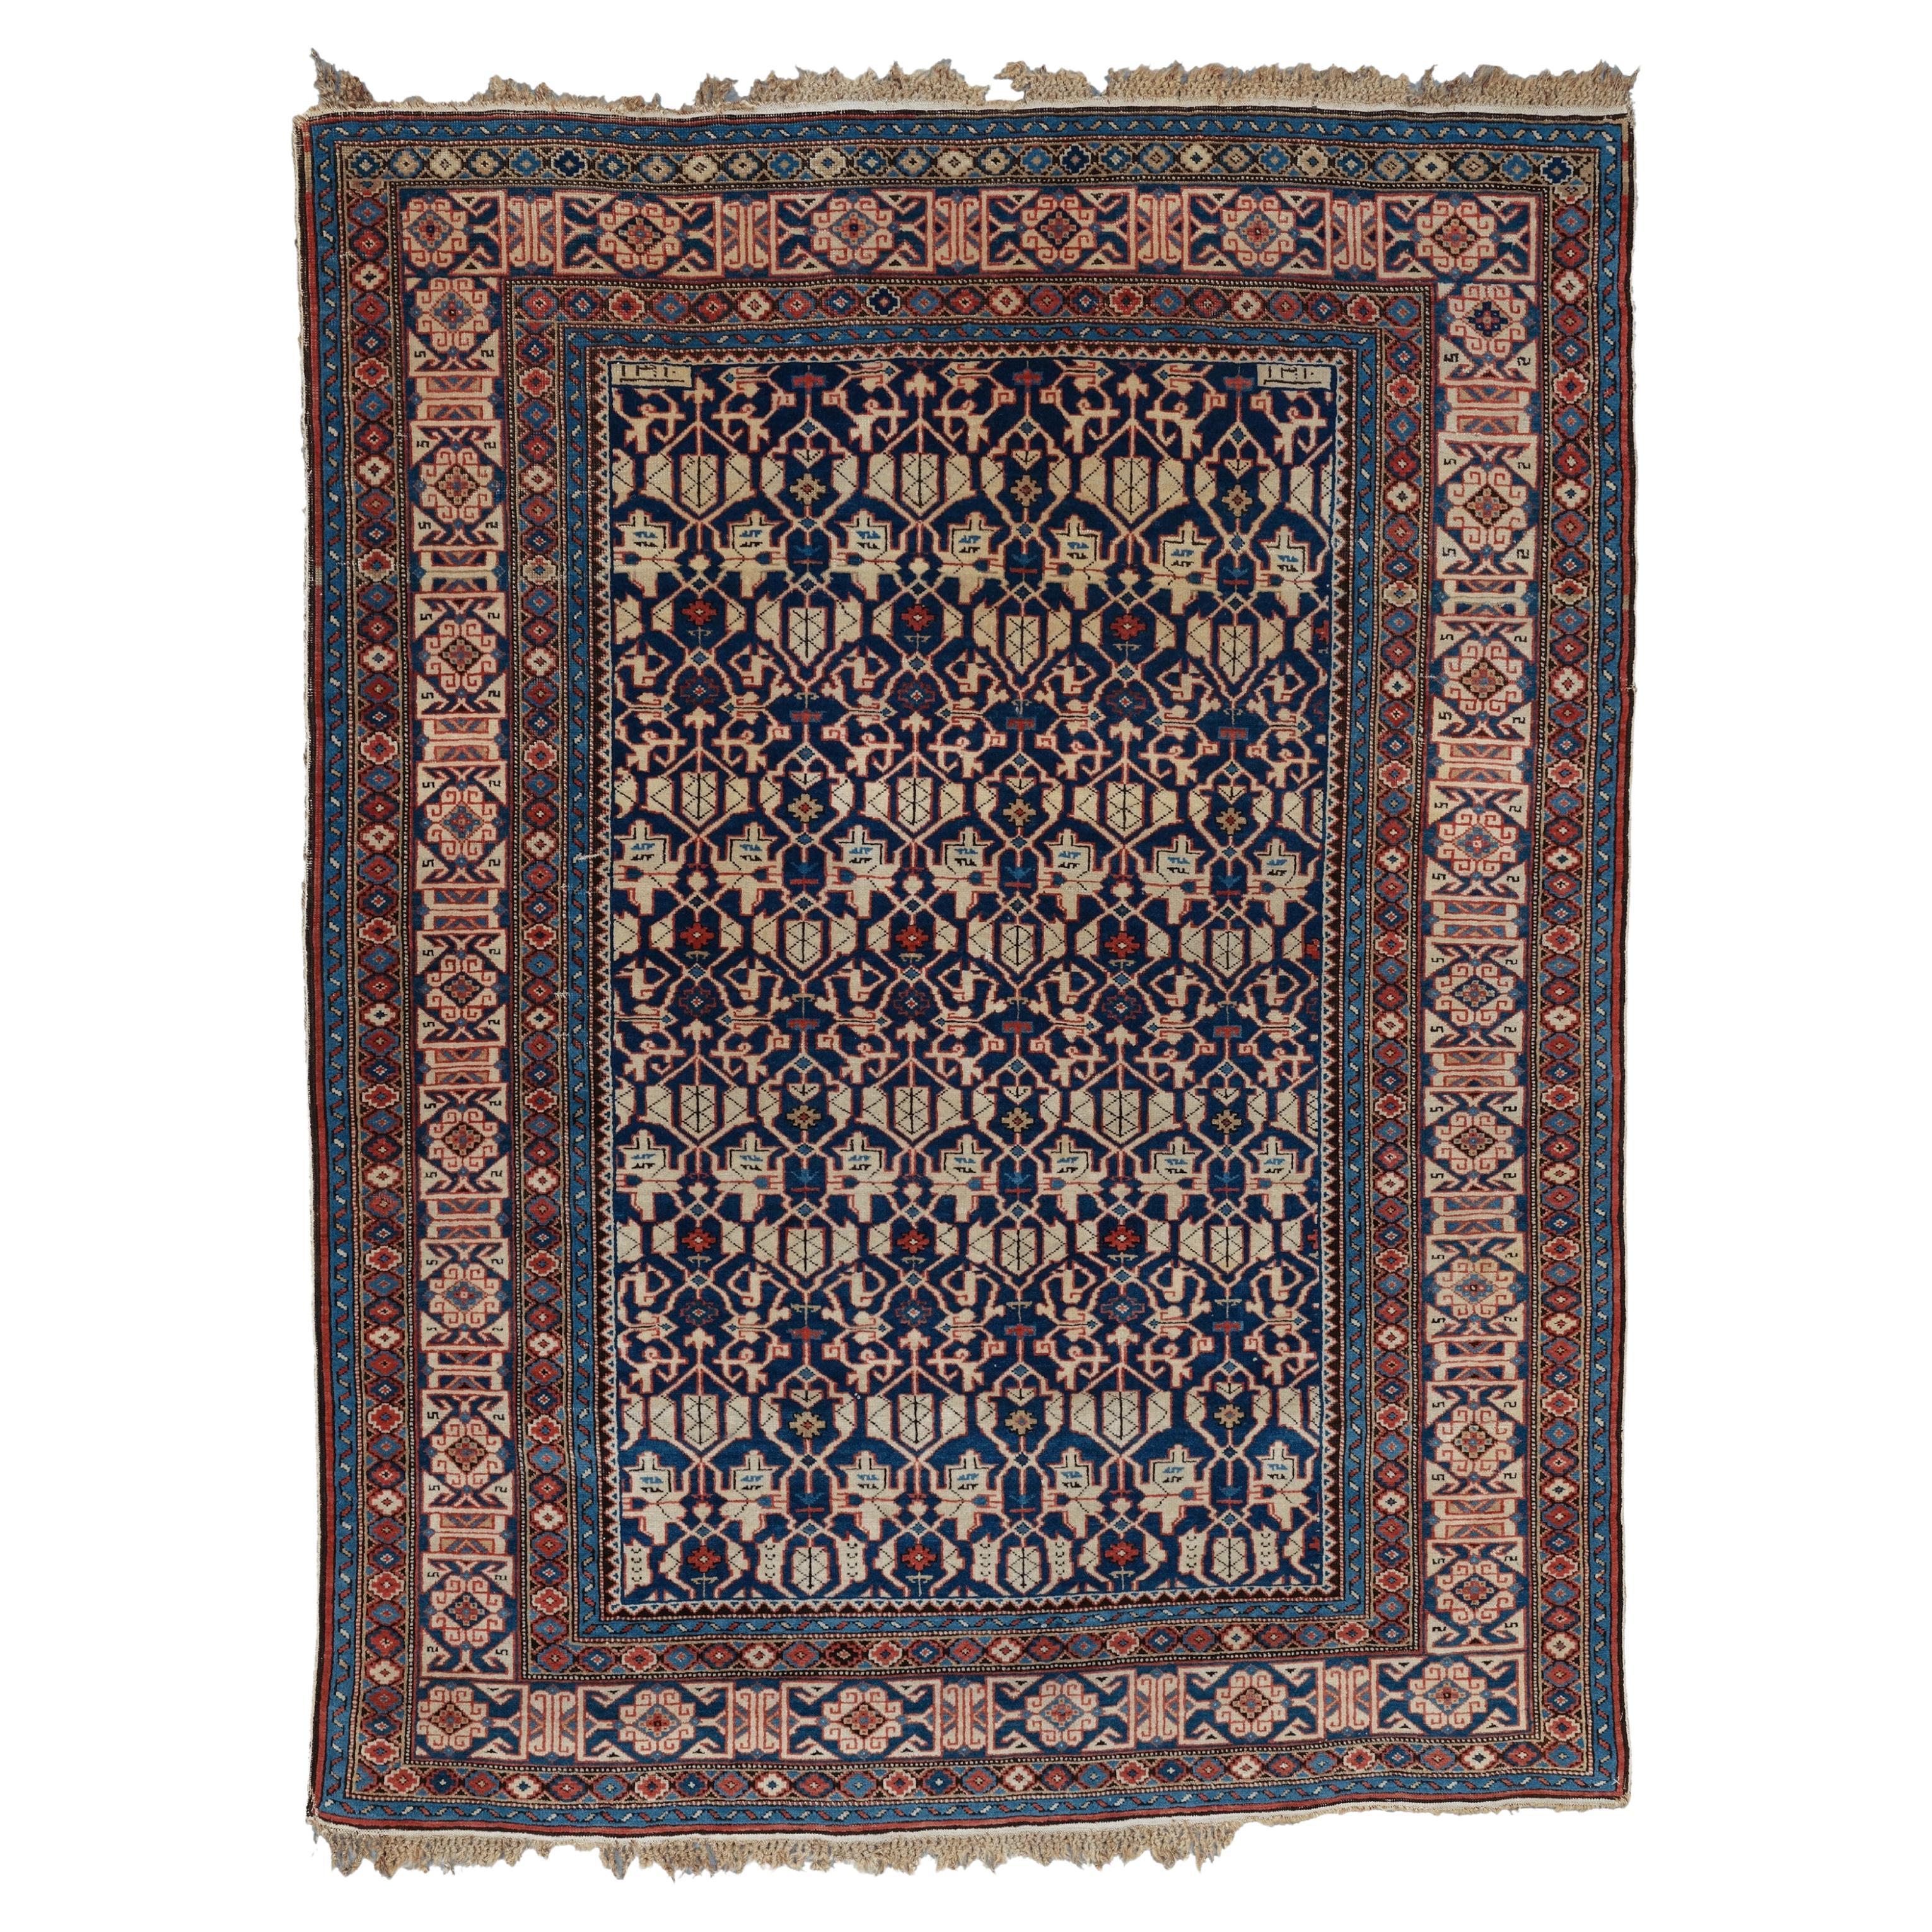 Antiker Kuba Konagkend-Teppich aus dem dritten Viertel des 19. Jahrhunderts, antiker Teppich